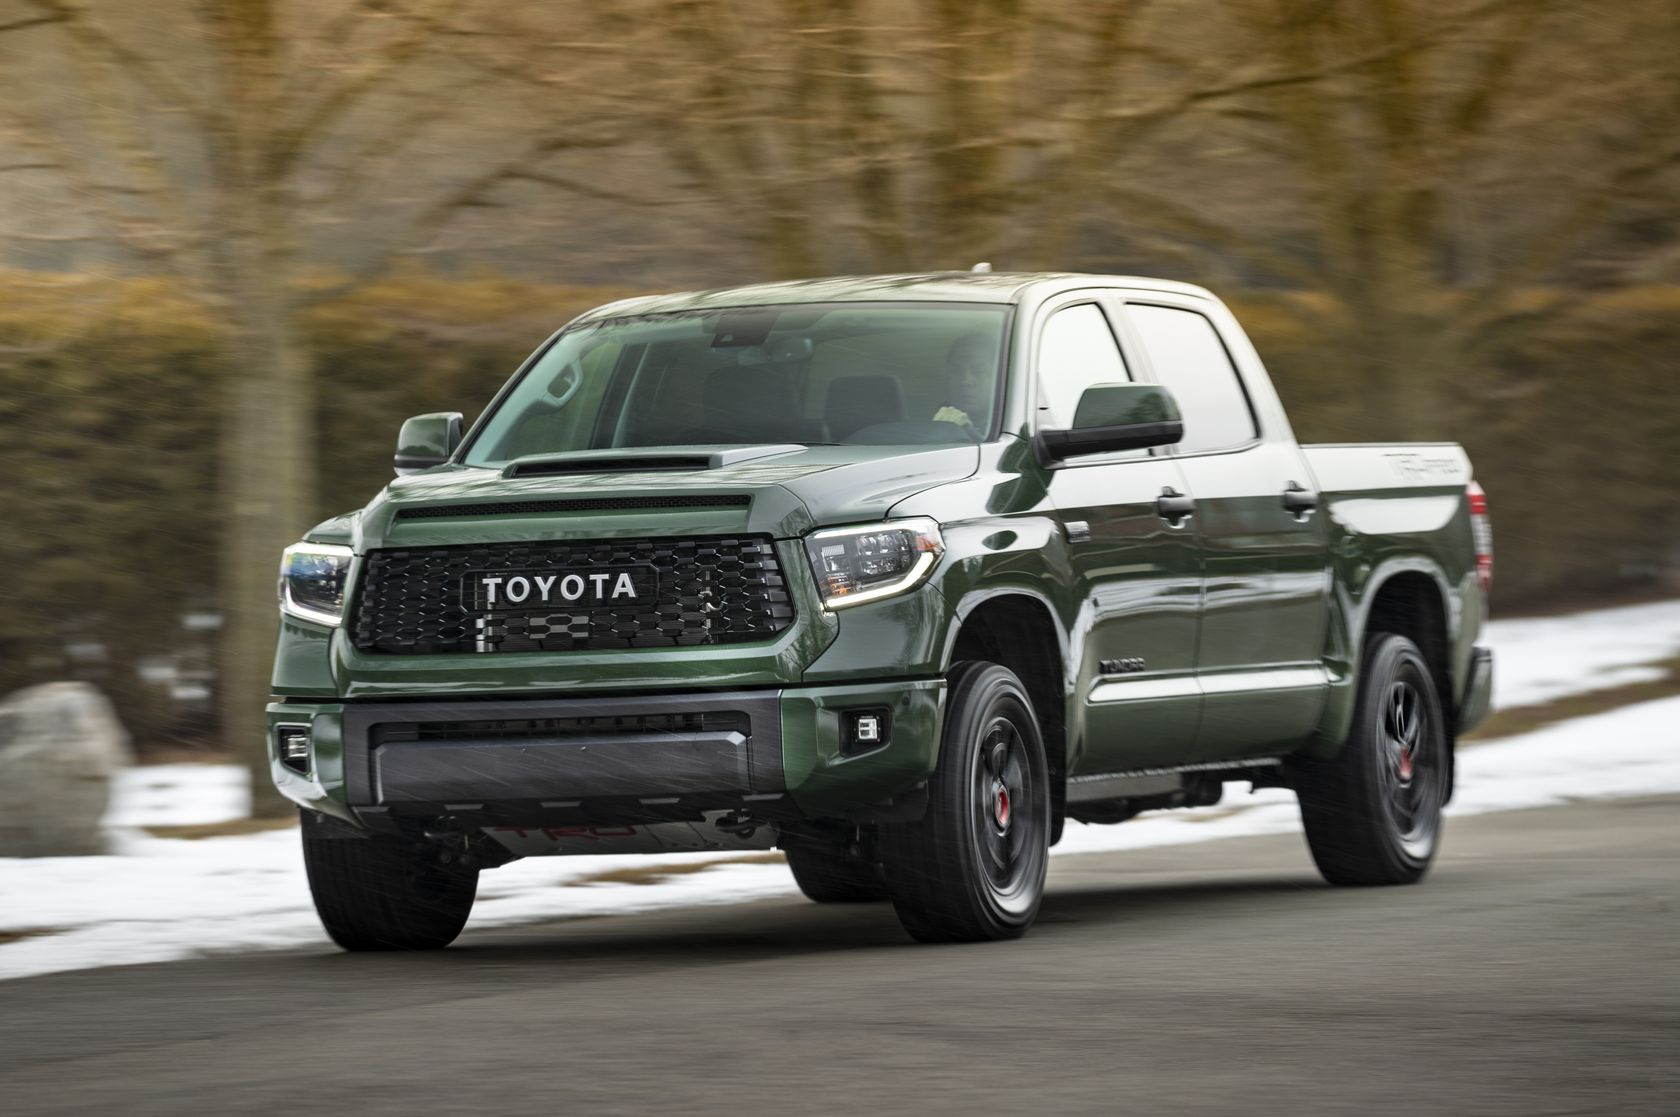 Devant du Toyota Tundra 2020 vert